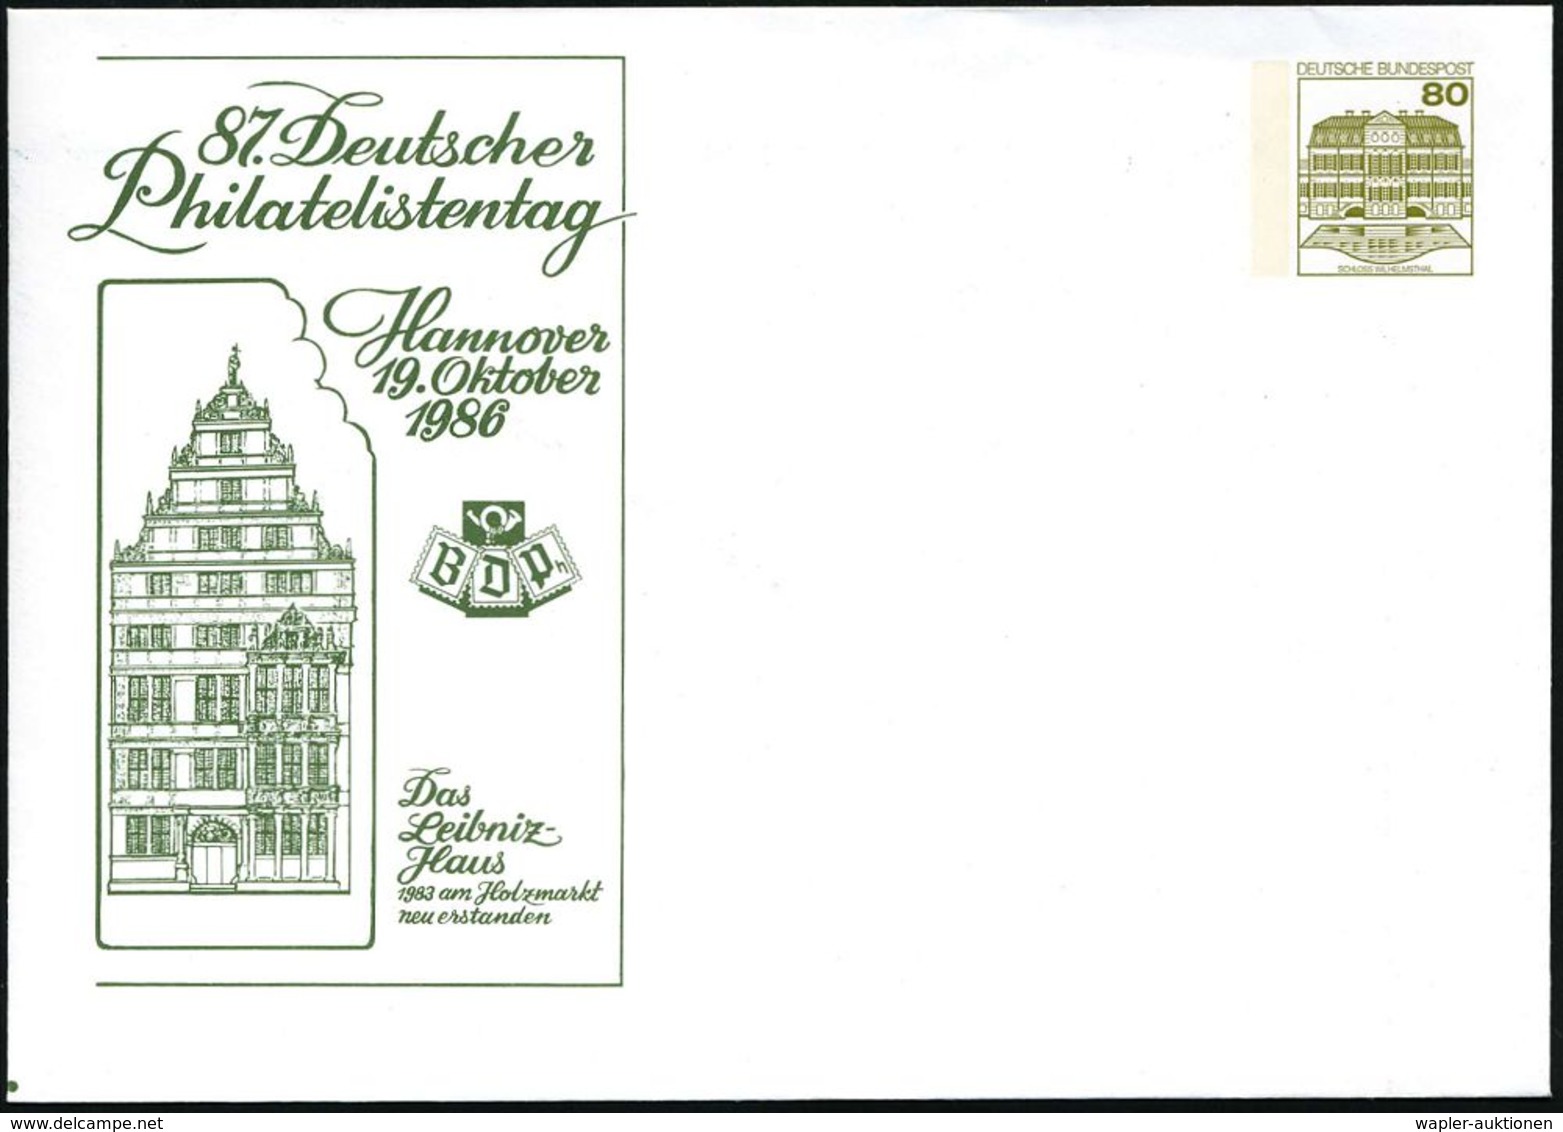 BERÜHMTE MATHEMATIKER : Hannover 1986 (19.10.) PU 80 Pf. Burgen; 87. Deutscher Philatel.Tag/ Das  L E I B N I T Z - Haus - Ohne Zuordnung